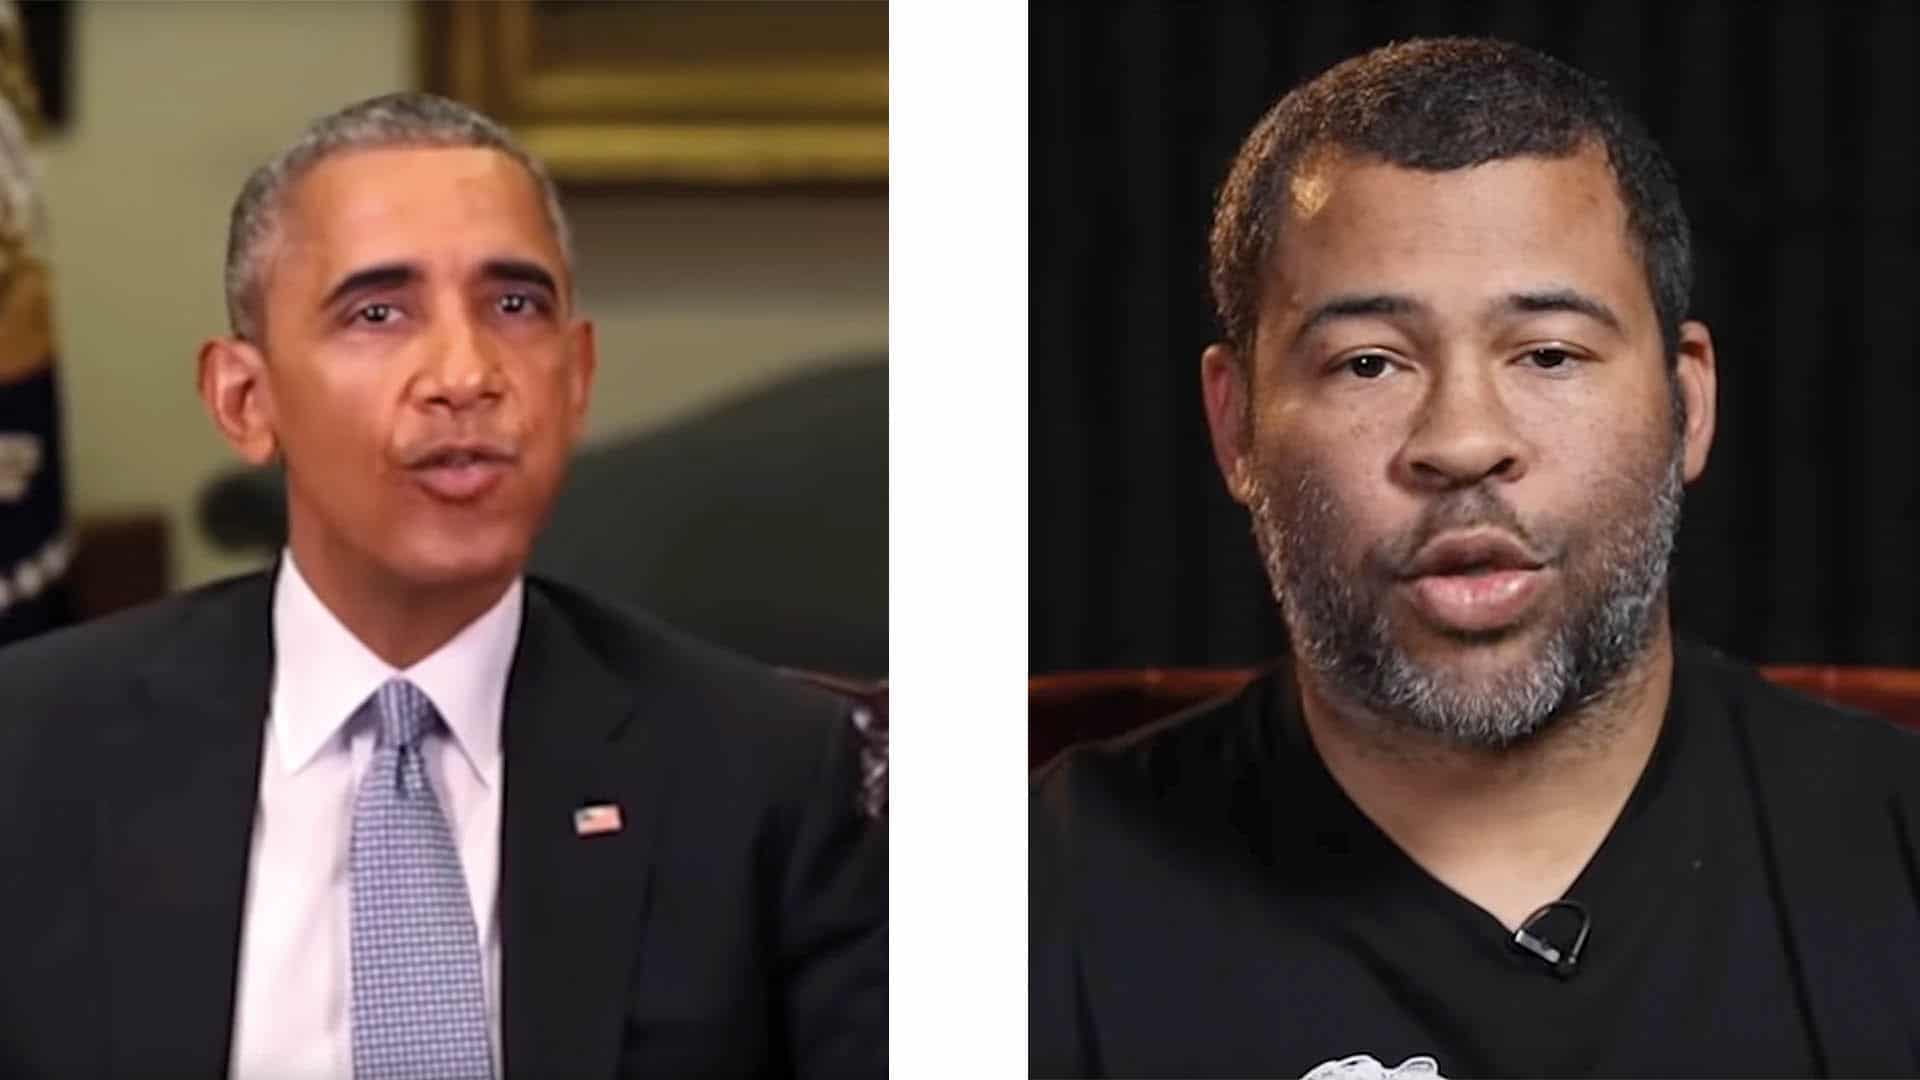 Der amerikanische Comedian Jordan Peele (re.) gab sich in einem Video dank geschickter Software als der ehemalige US-Präsident Barack Obama (li.) aus